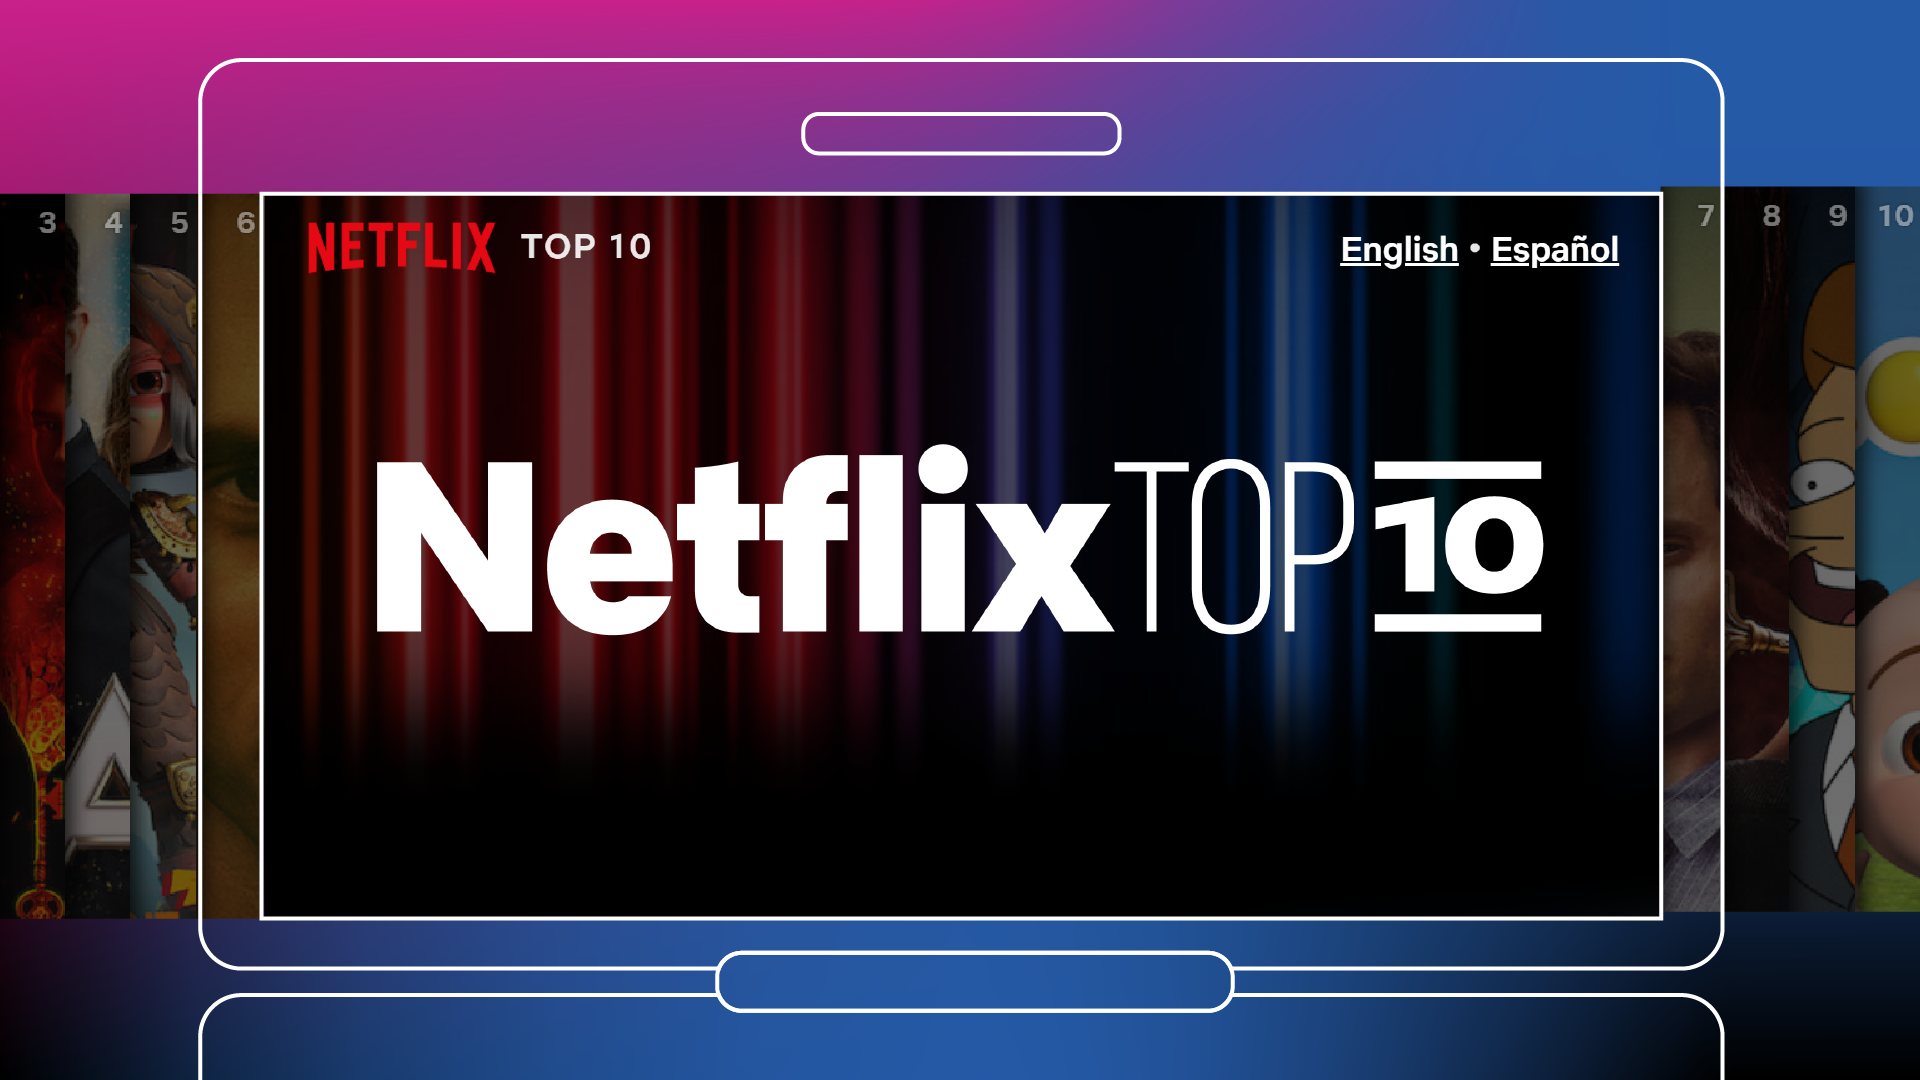 Những chỉ số của Netflix năm ấy: Câu chuyện về “Top 10 trên Netflix” hằng tuần